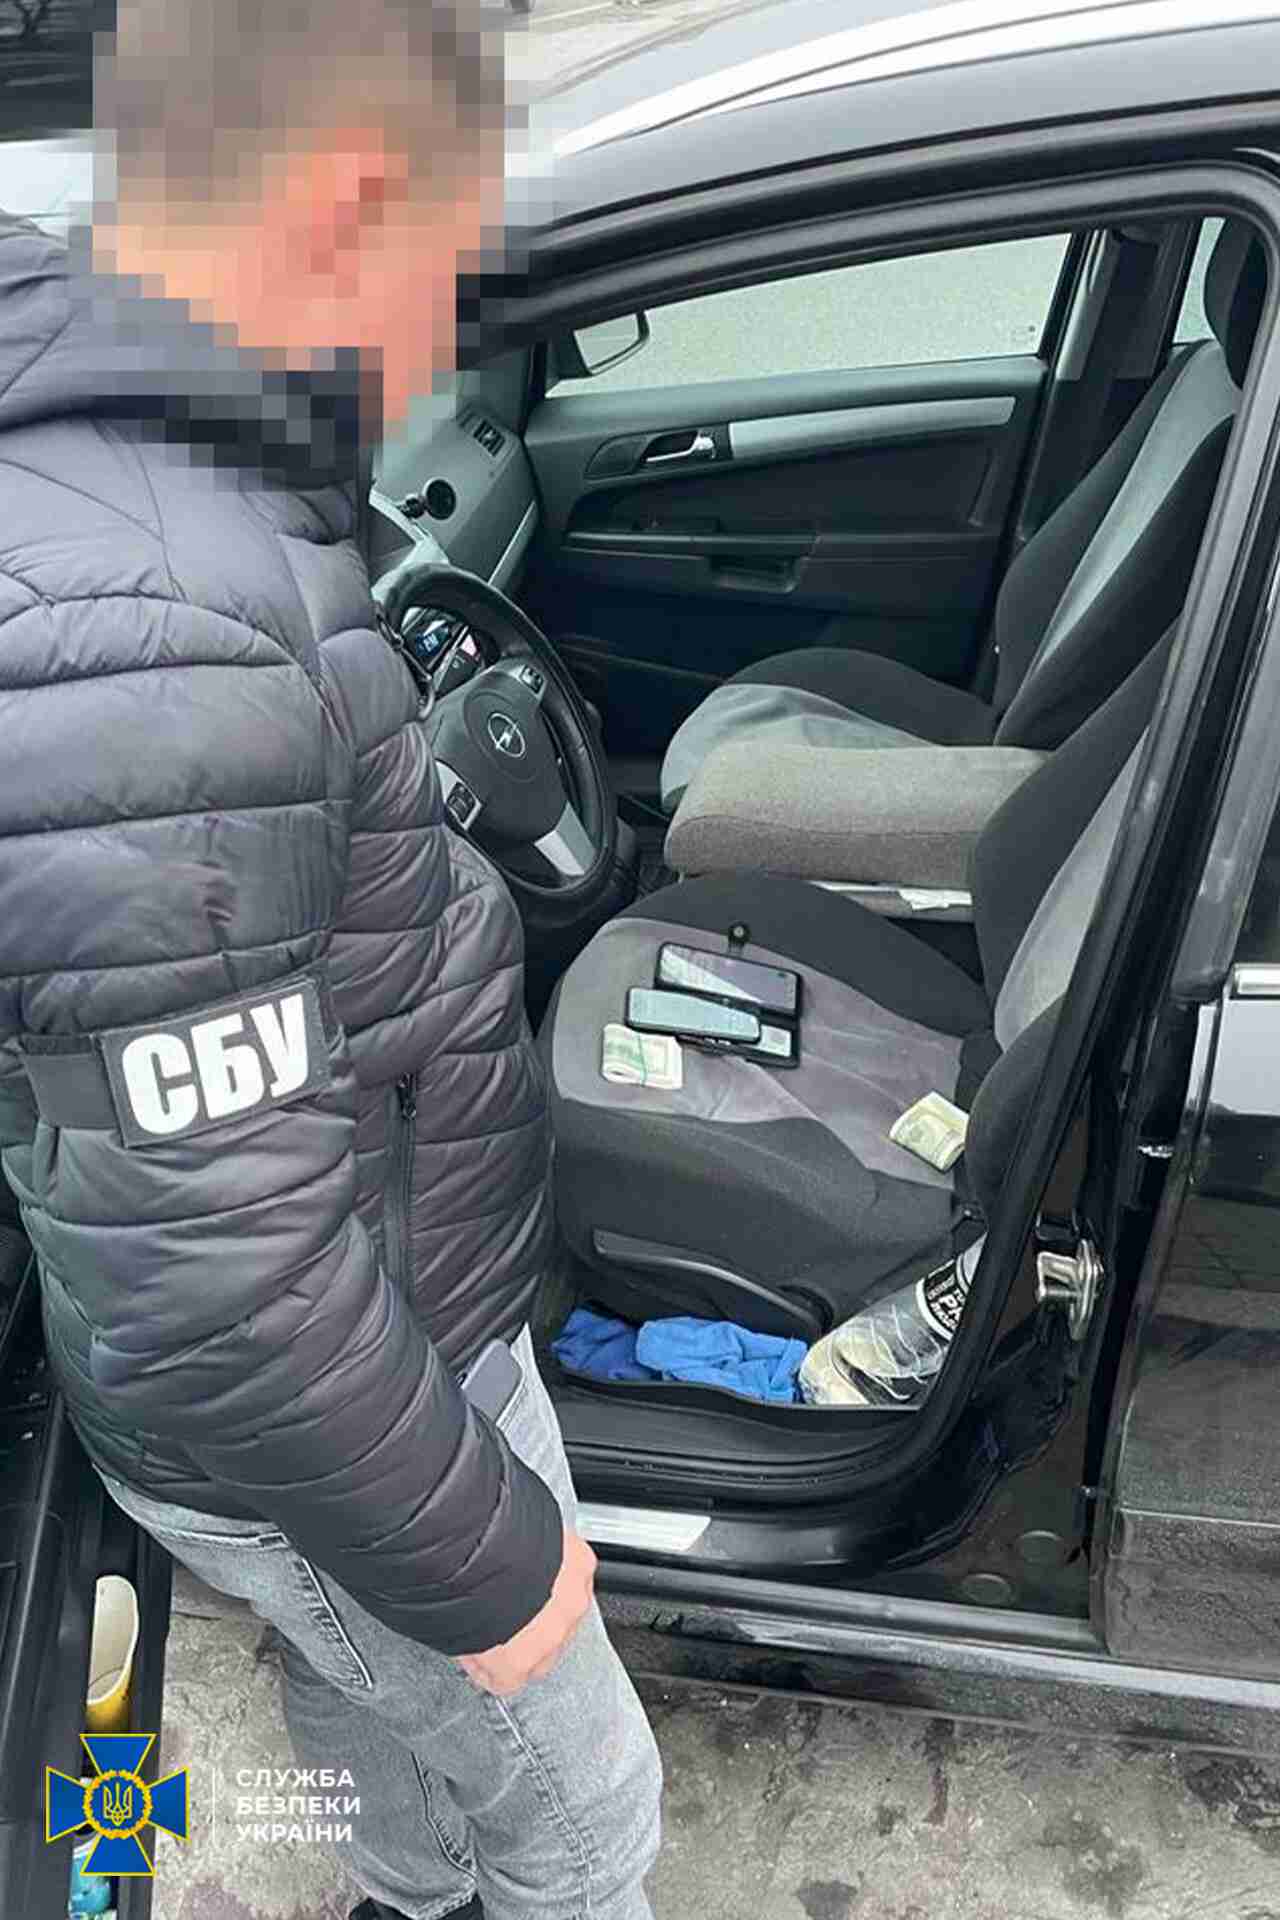 СБУ викрила масштабне злочинне угрупування, яке переправляло ухилянтів через росію (ФОТО)